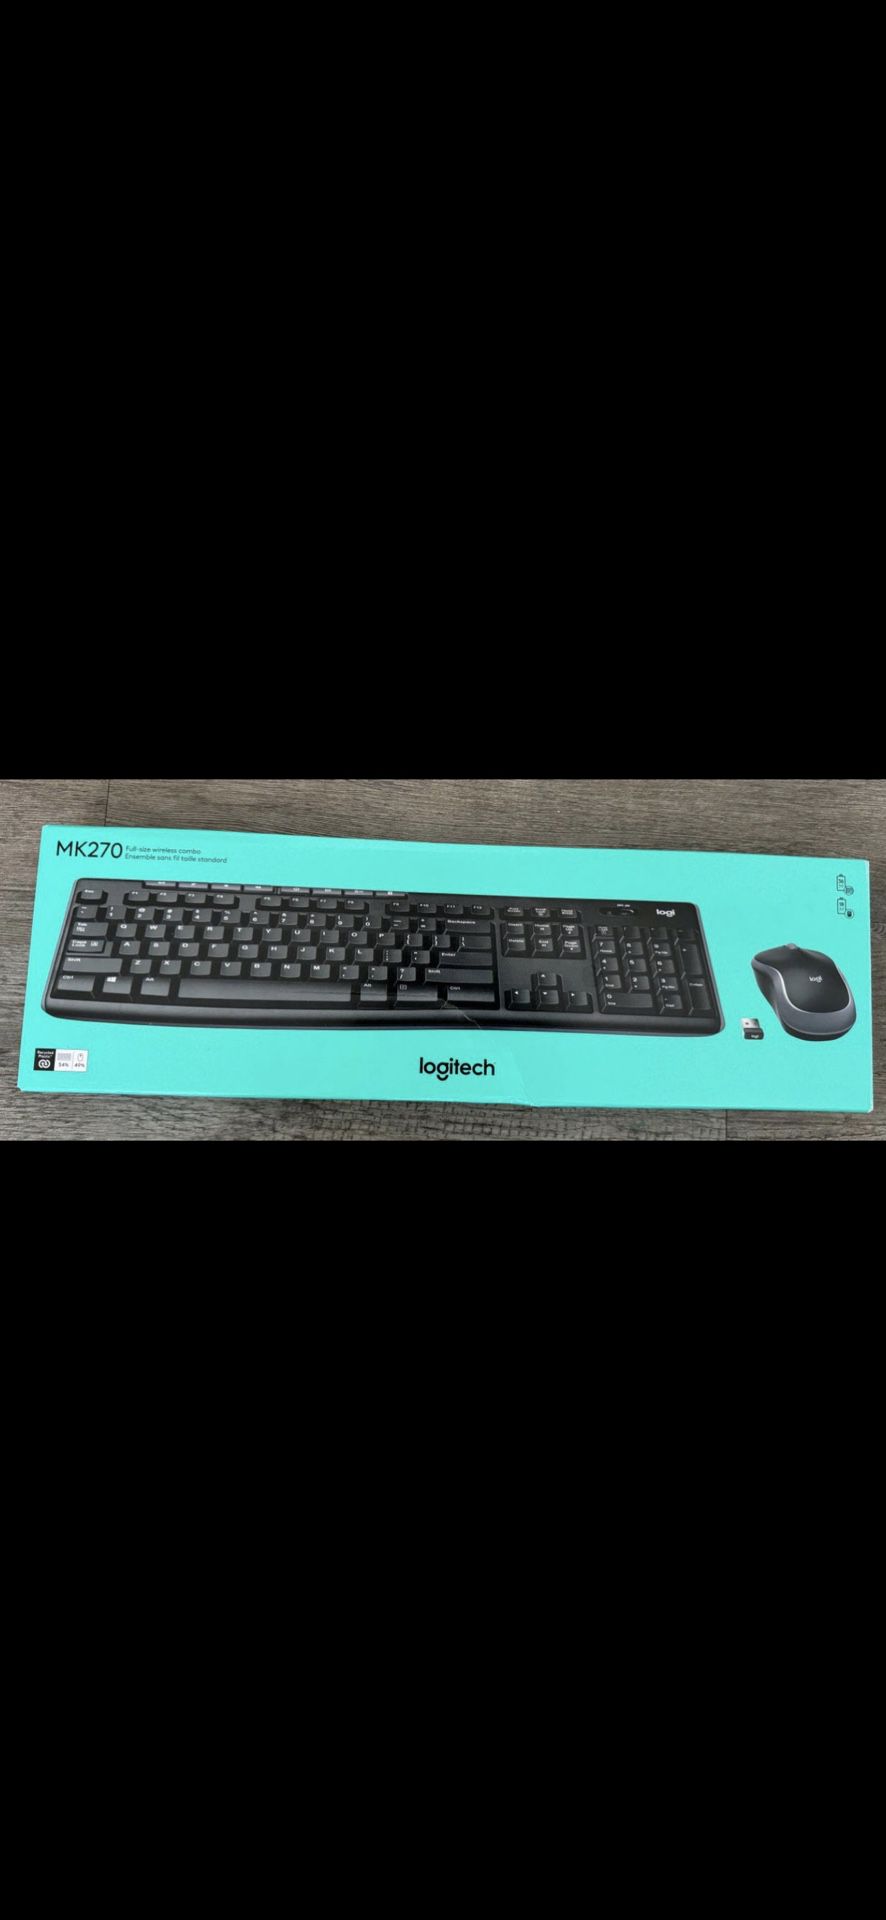 Logitech Wireless Keyboard And Mouse Like Brand New